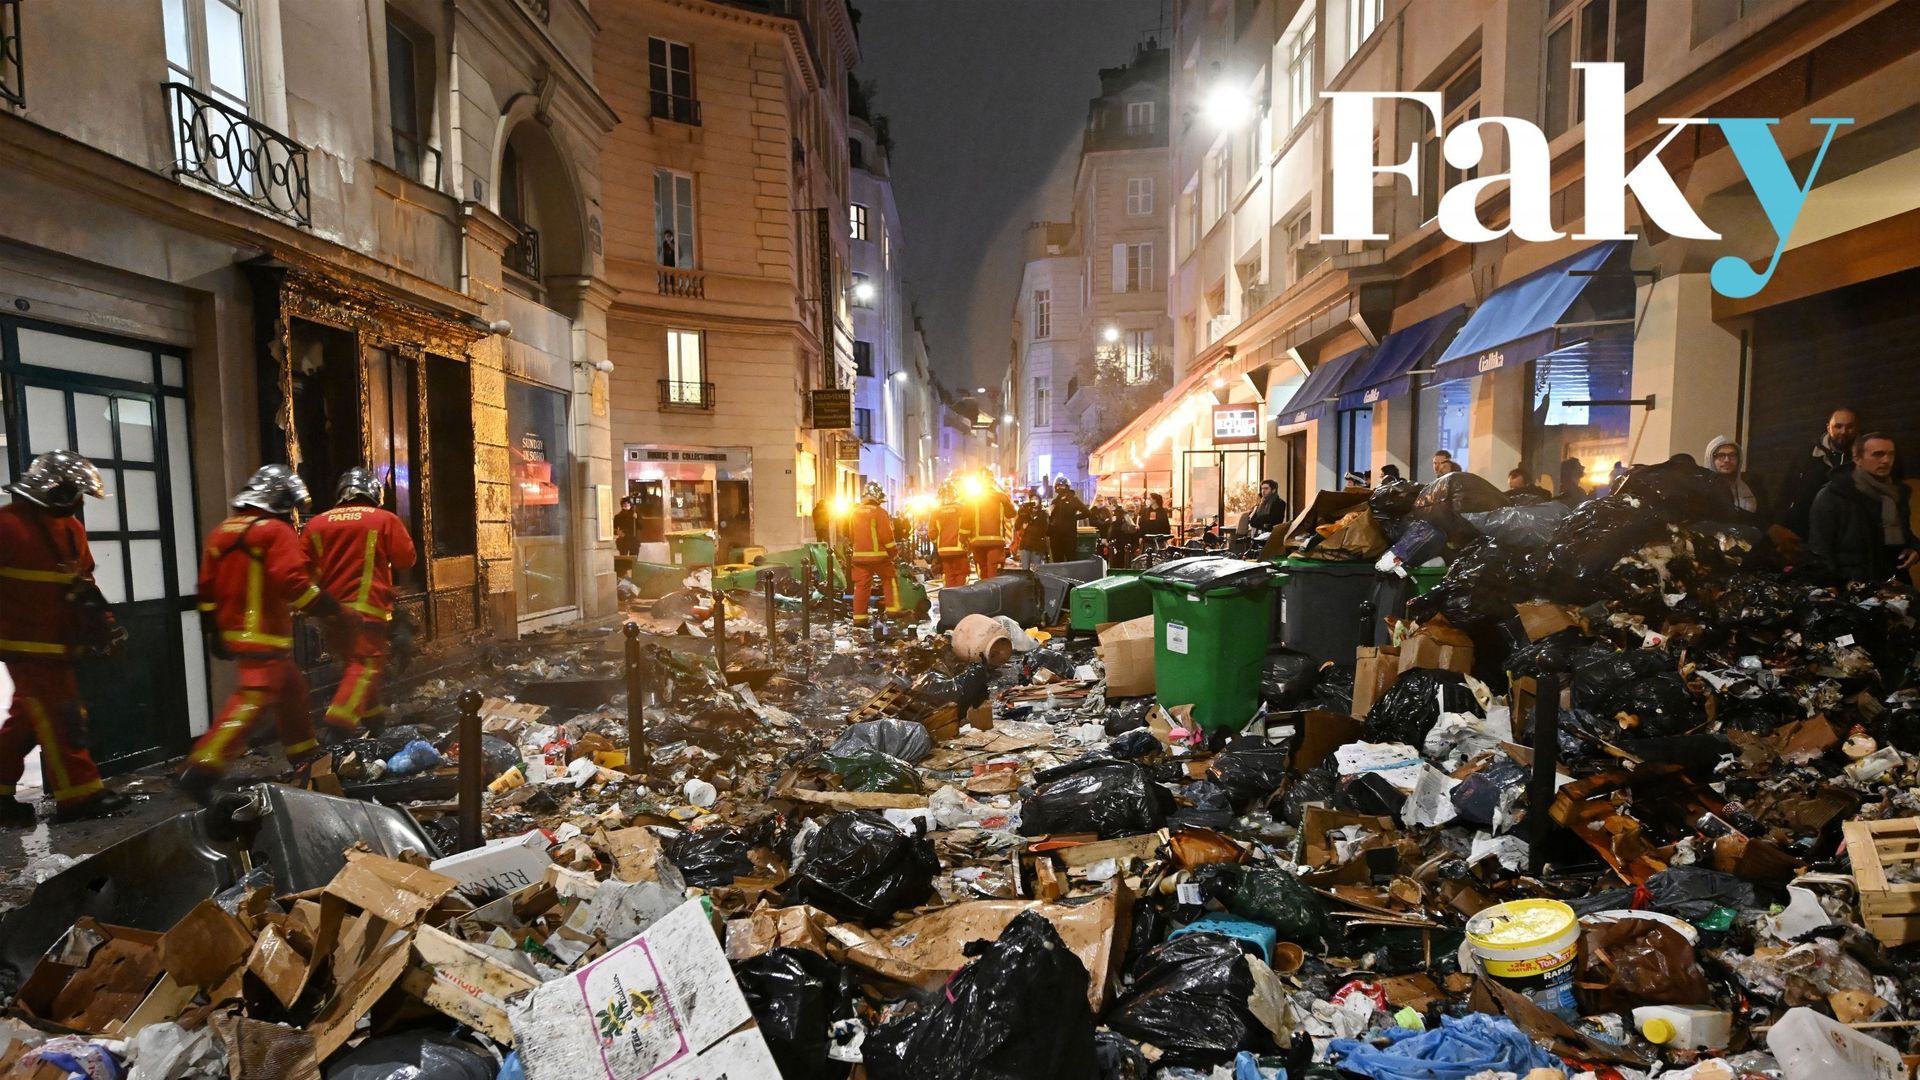 Des pompiers vérifient les déchets après avoir éteint un incendie lors d’une manifestation, une semaine après que le gouvernement a fait passer une réforme des retraites au parlement sans vote, en utilisant l’article 49.3 de la constitution, à Paris.